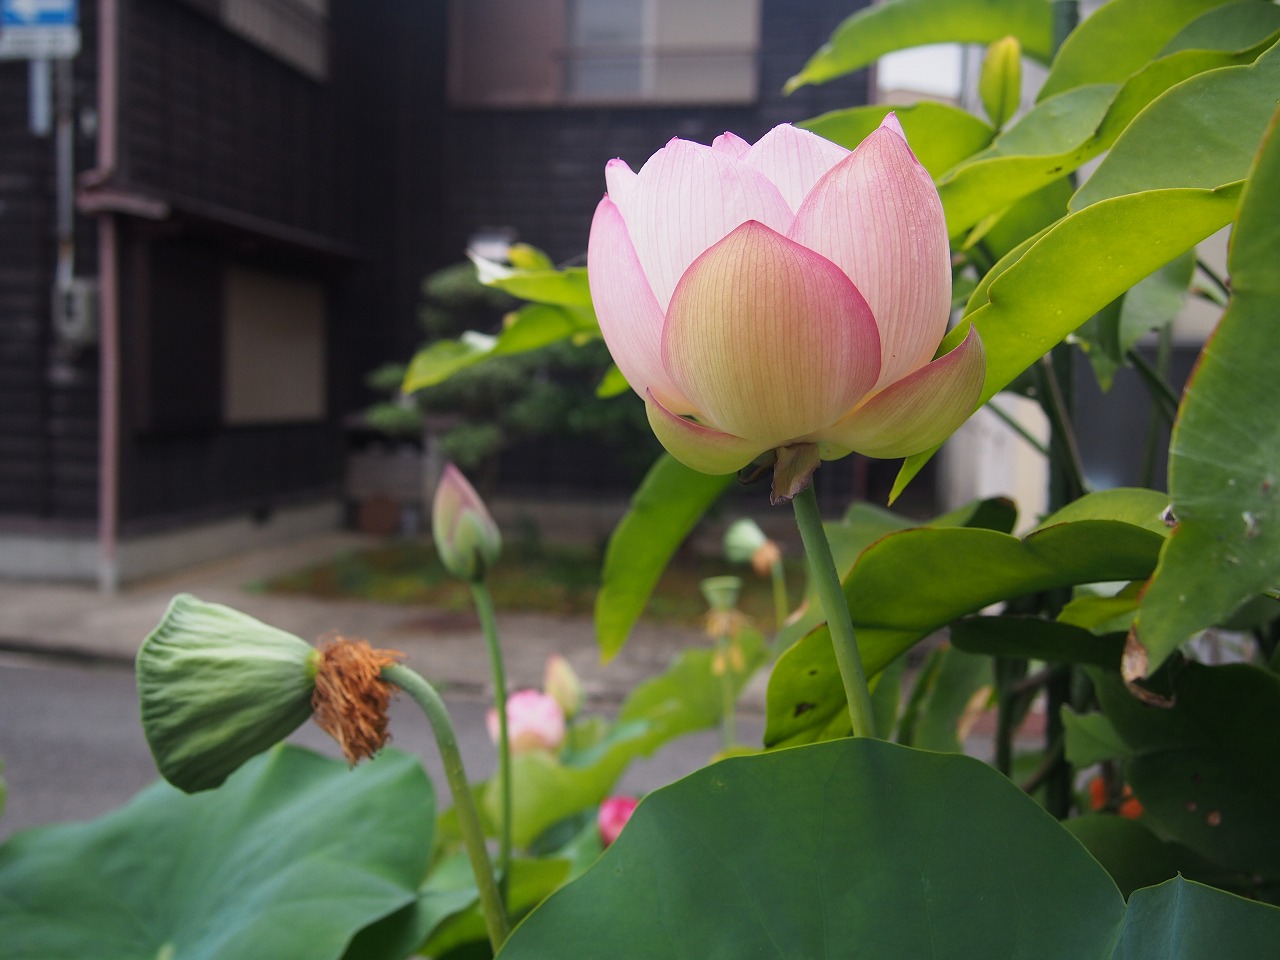 20170723-Lotus_TsumabeniChawanbasu-O01.jpg